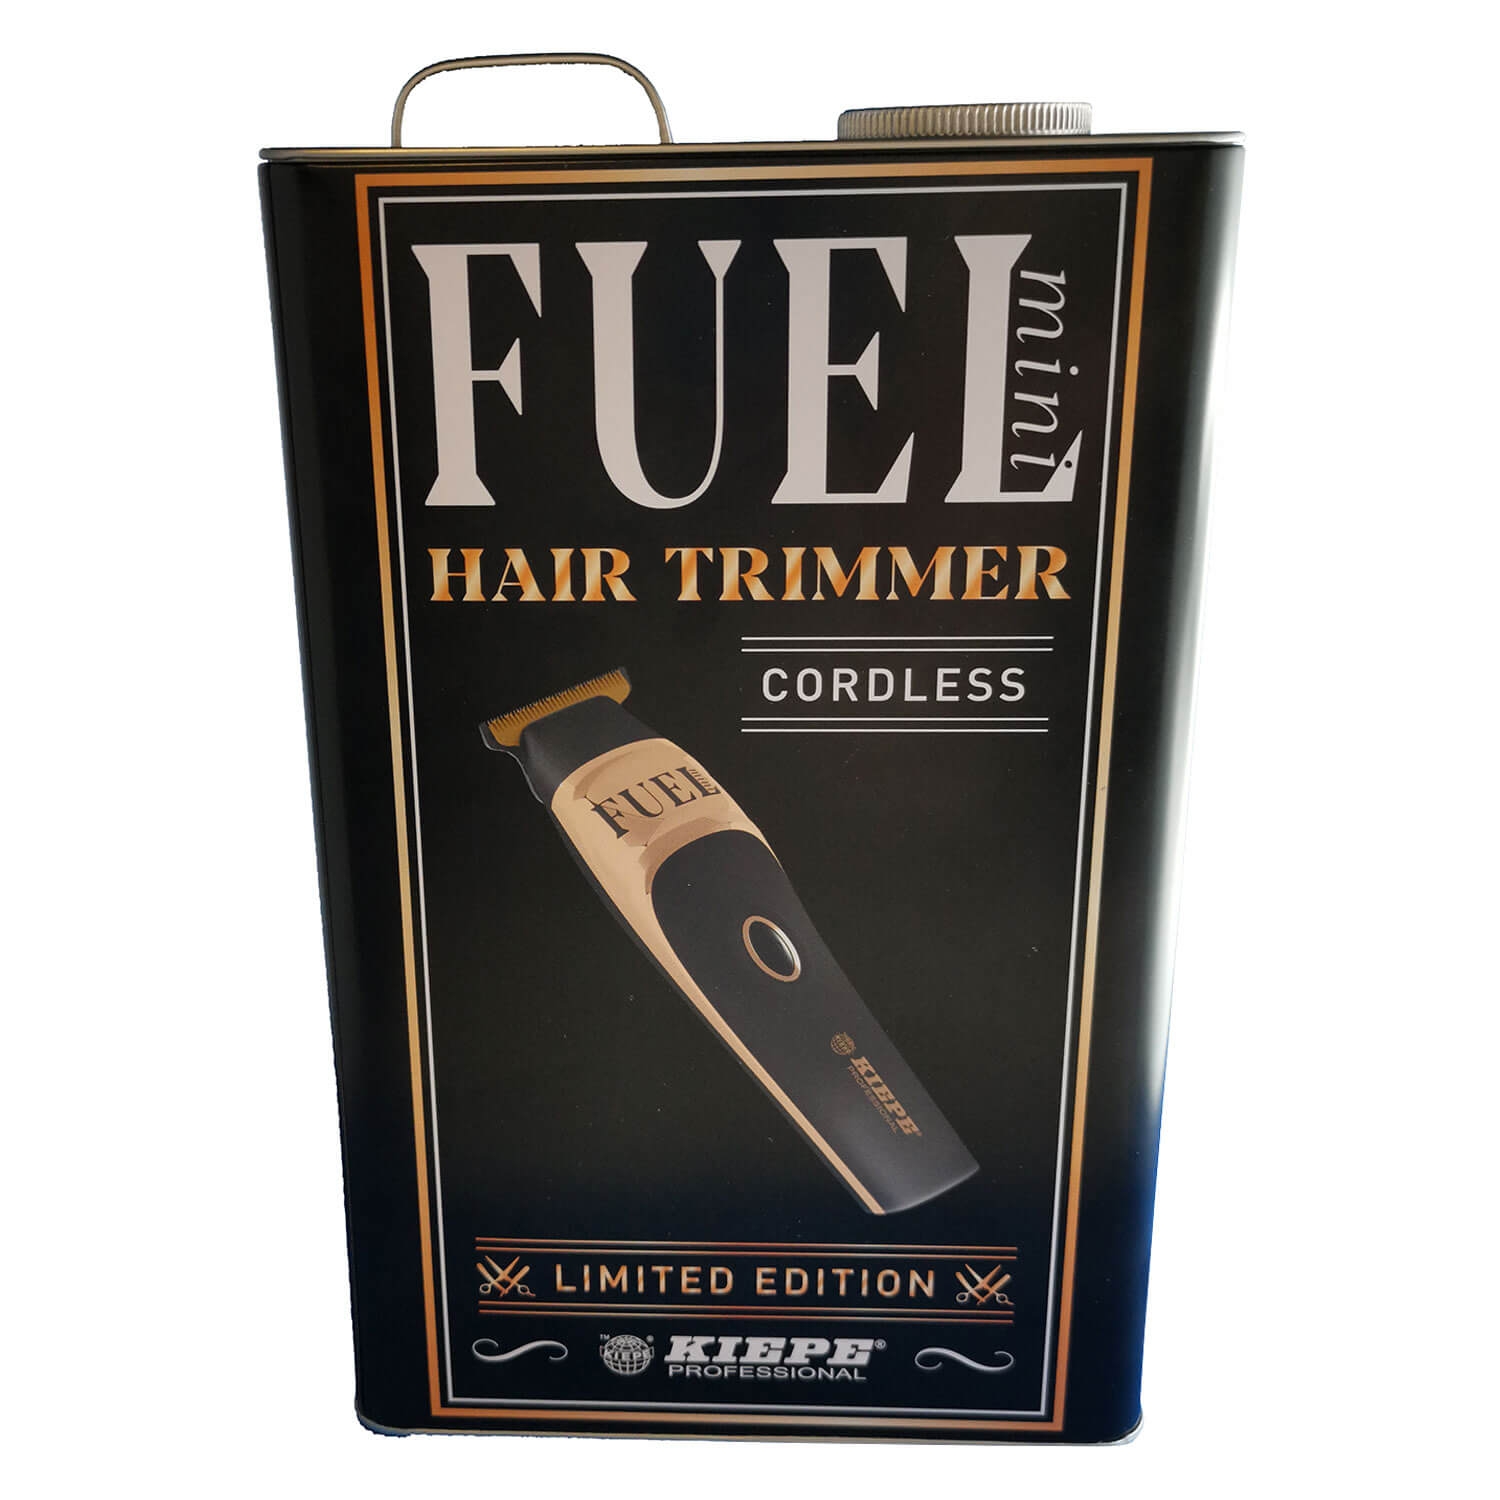 Produktbild von Kiepe - Fuel Mini Hair Trimmer